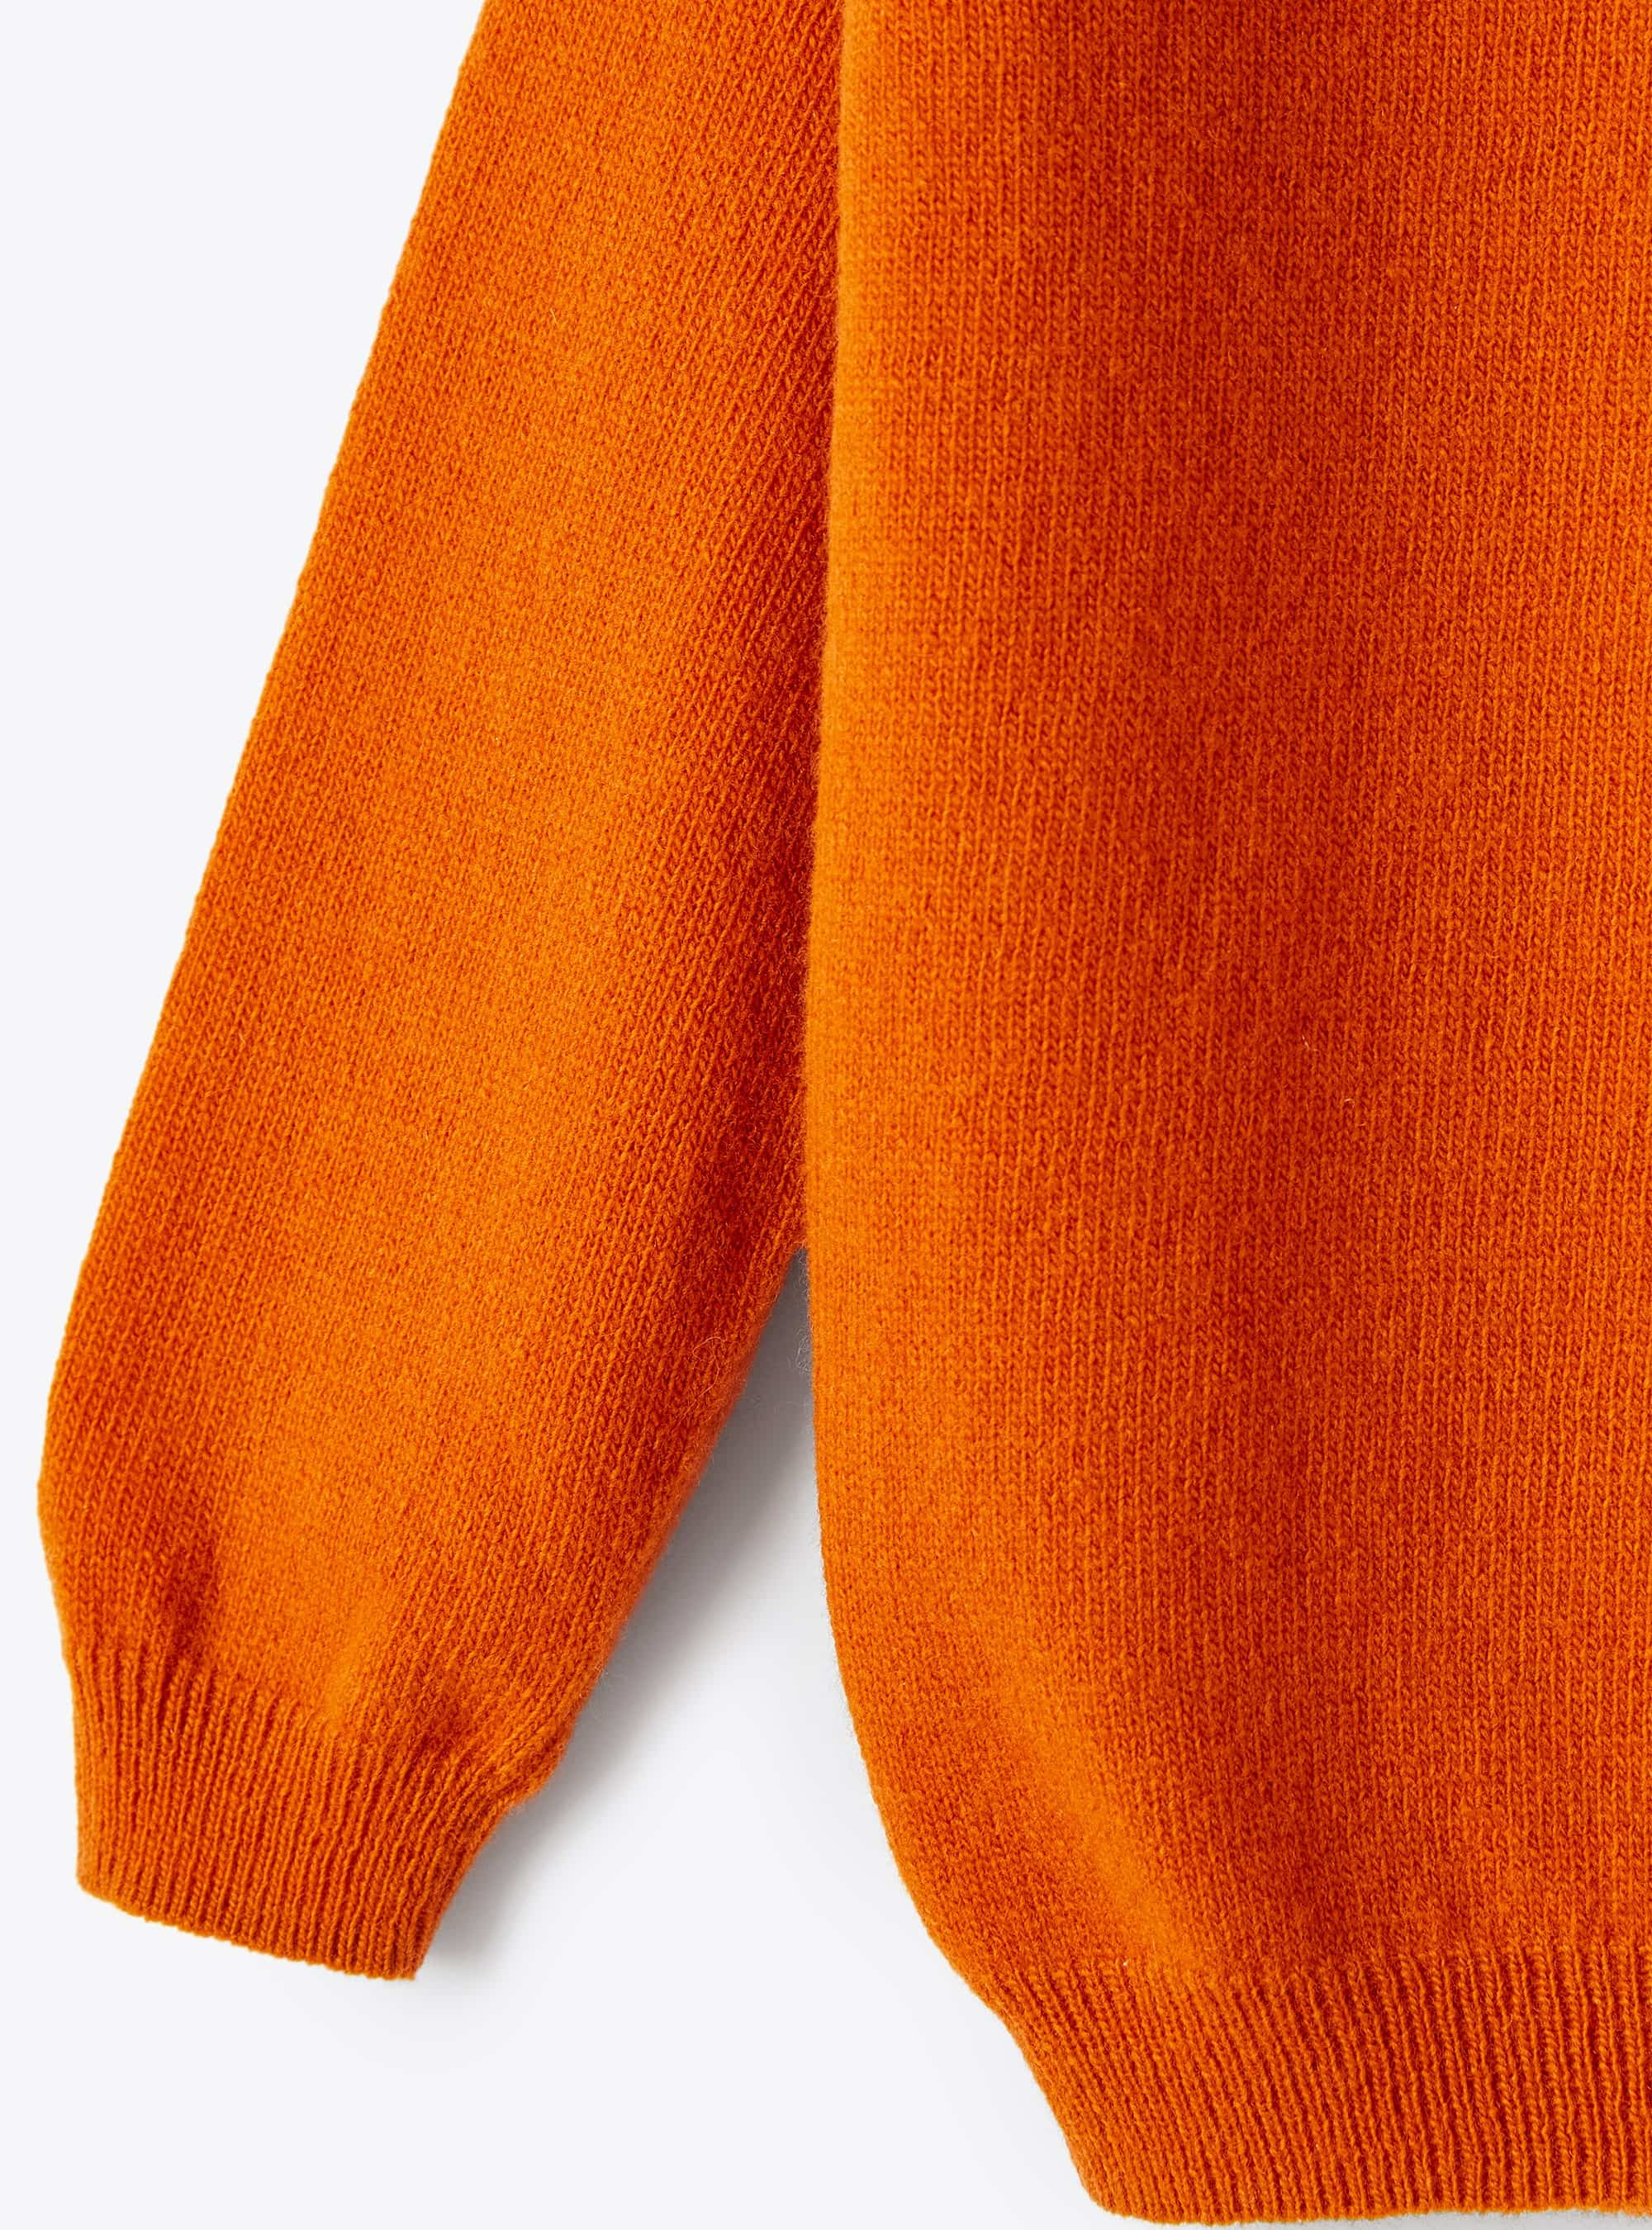 Dolcevita in lana merino arancio - Arancione | Il Gufo